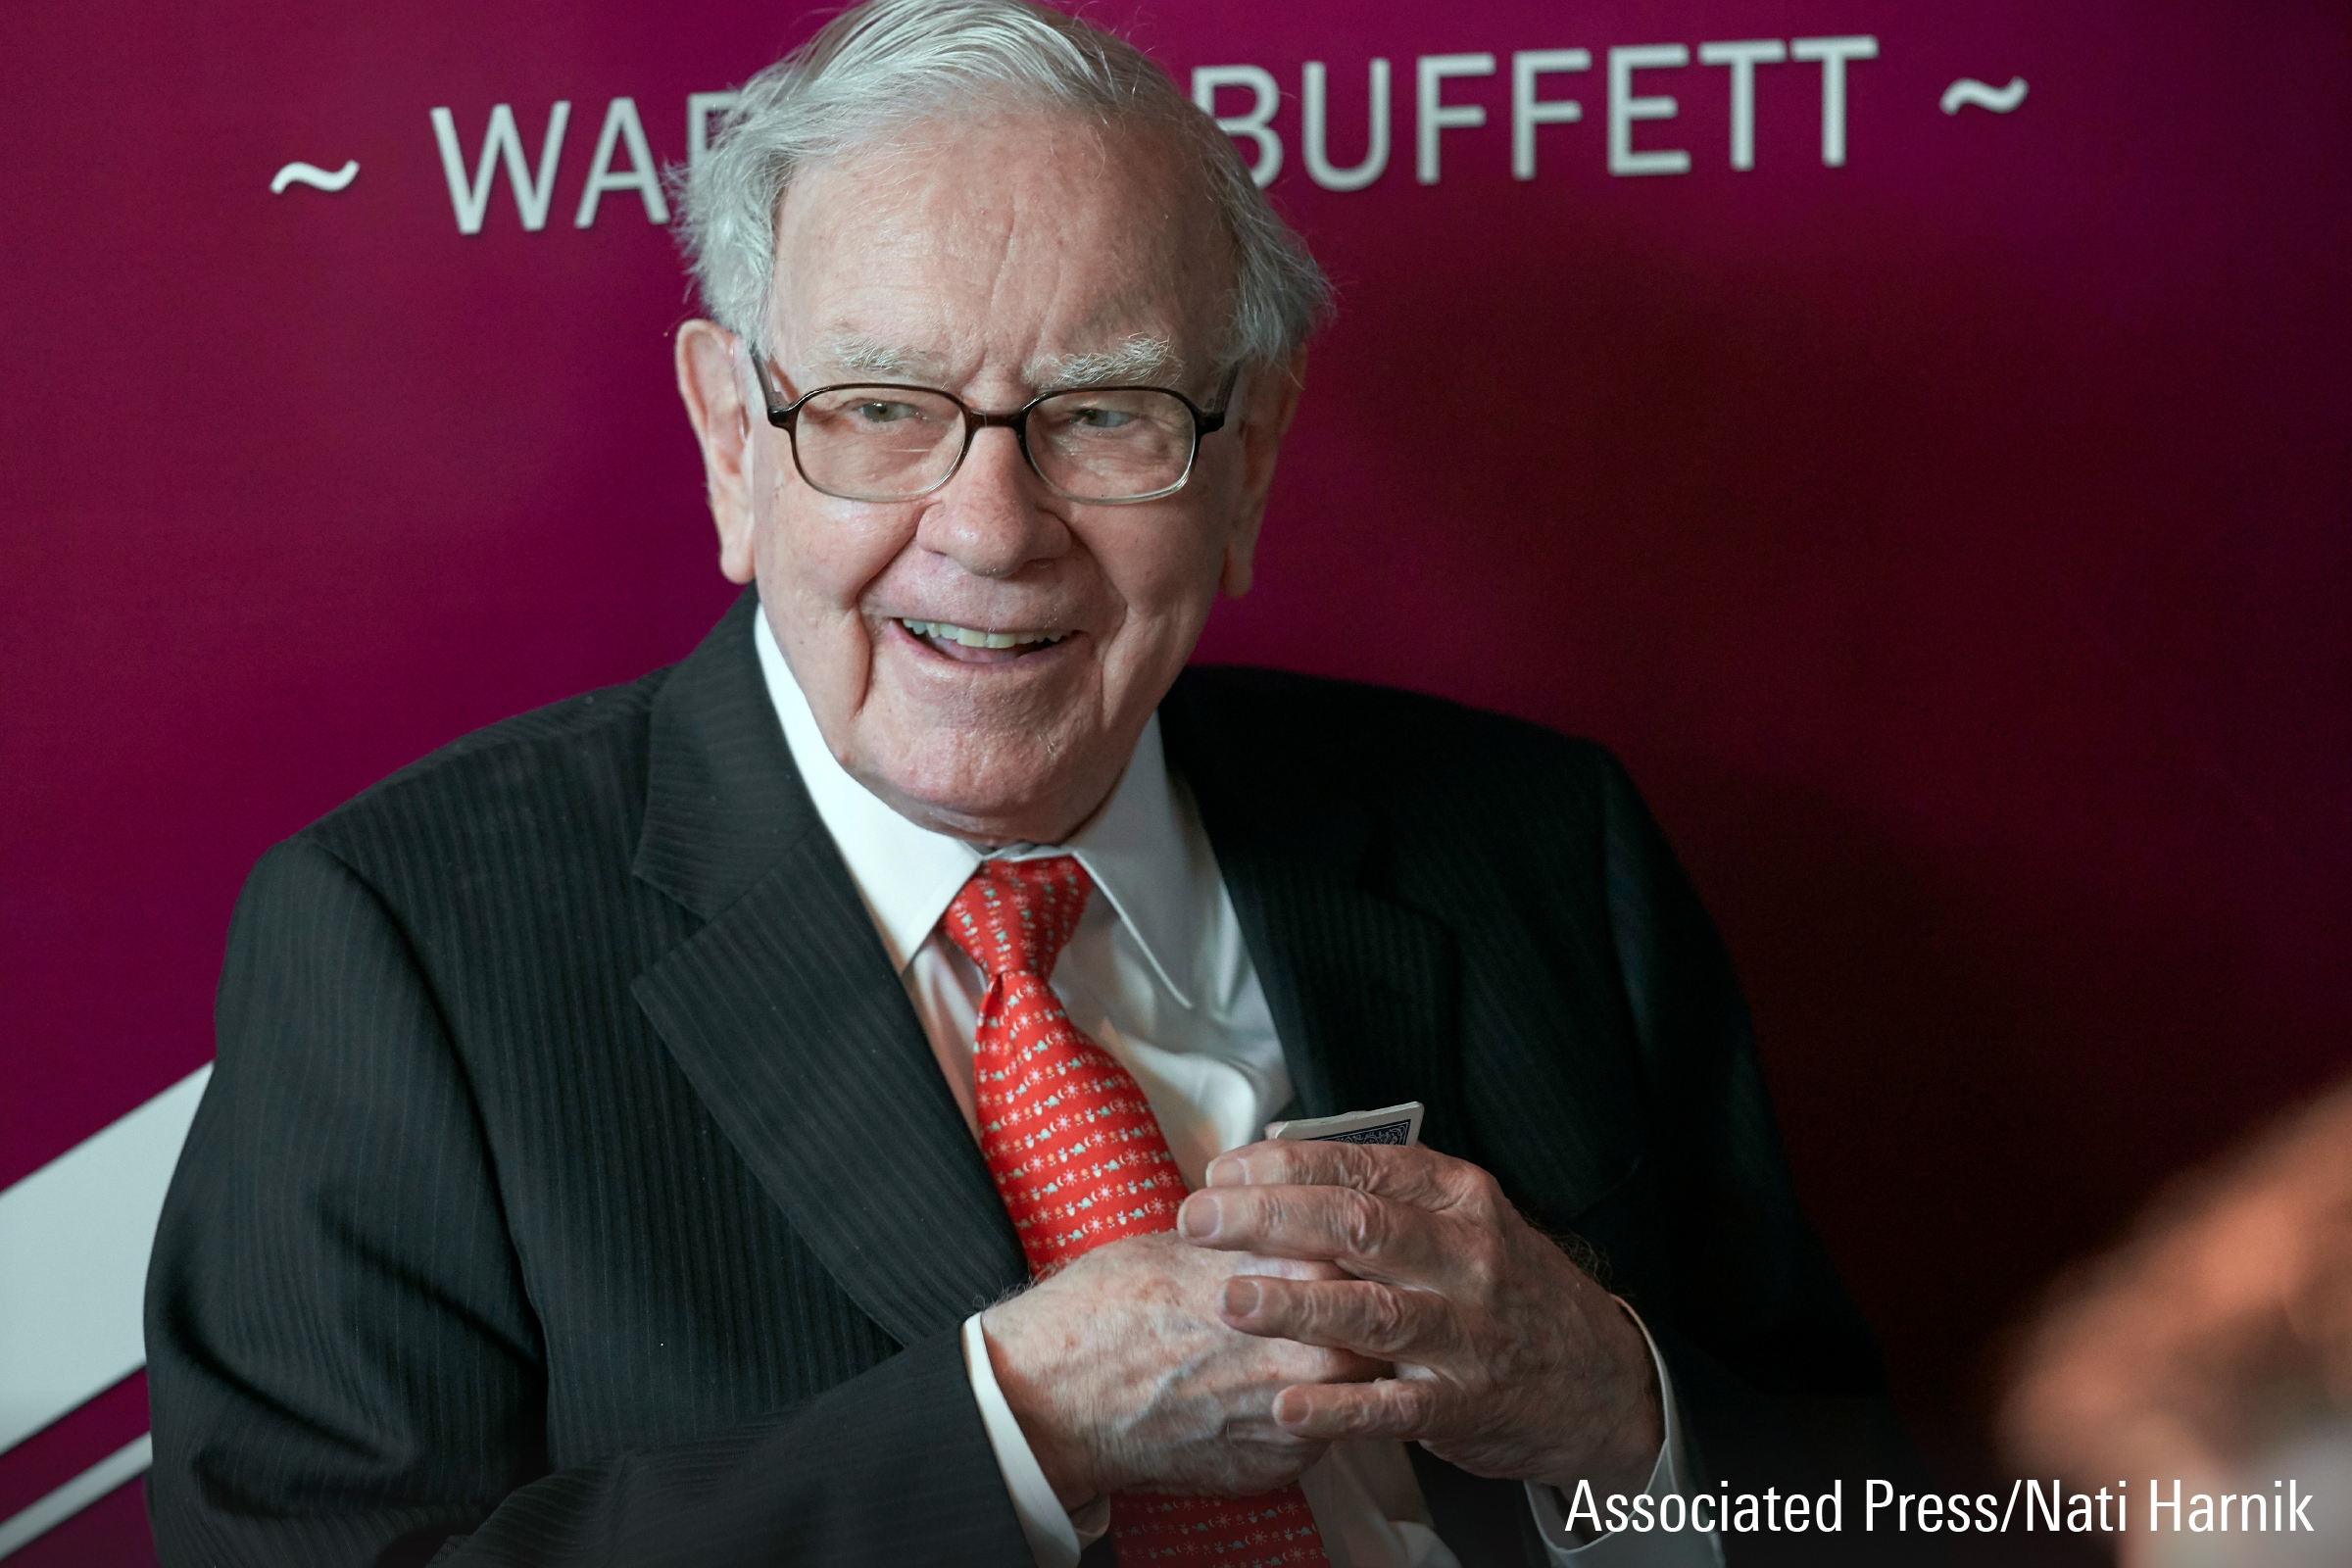 A photograph featuring Warren Buffett speaking at an event.